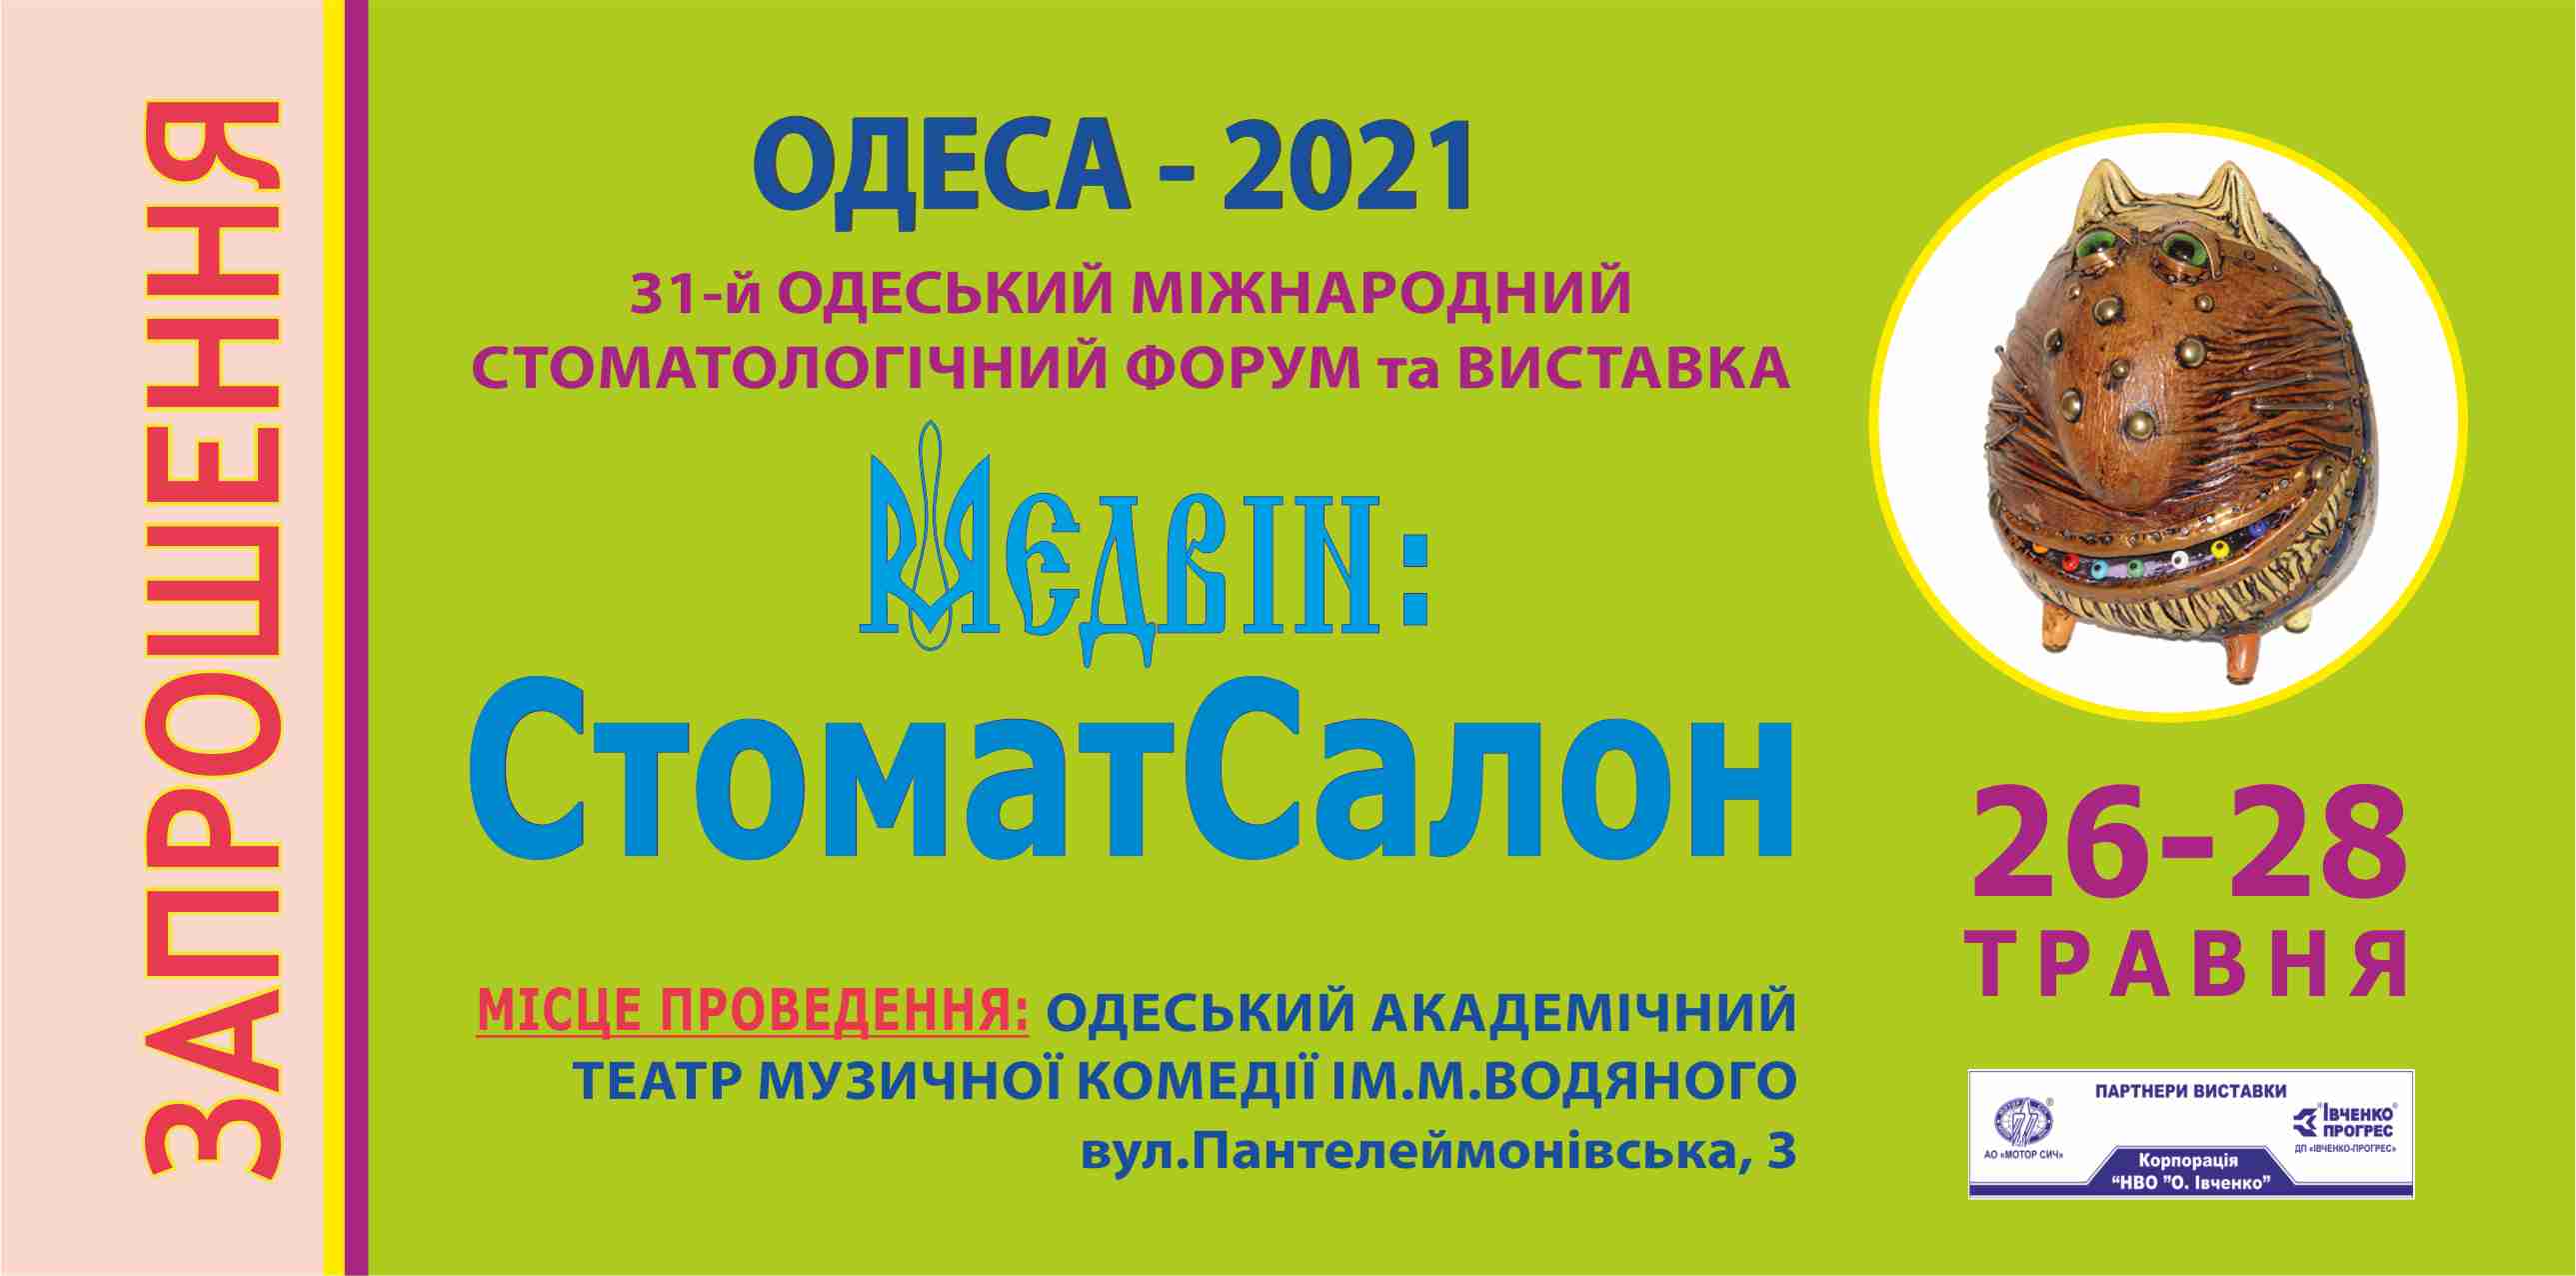 Реєстрація на виставку в Одесі МЕДВІН: СтоматСалон 2021